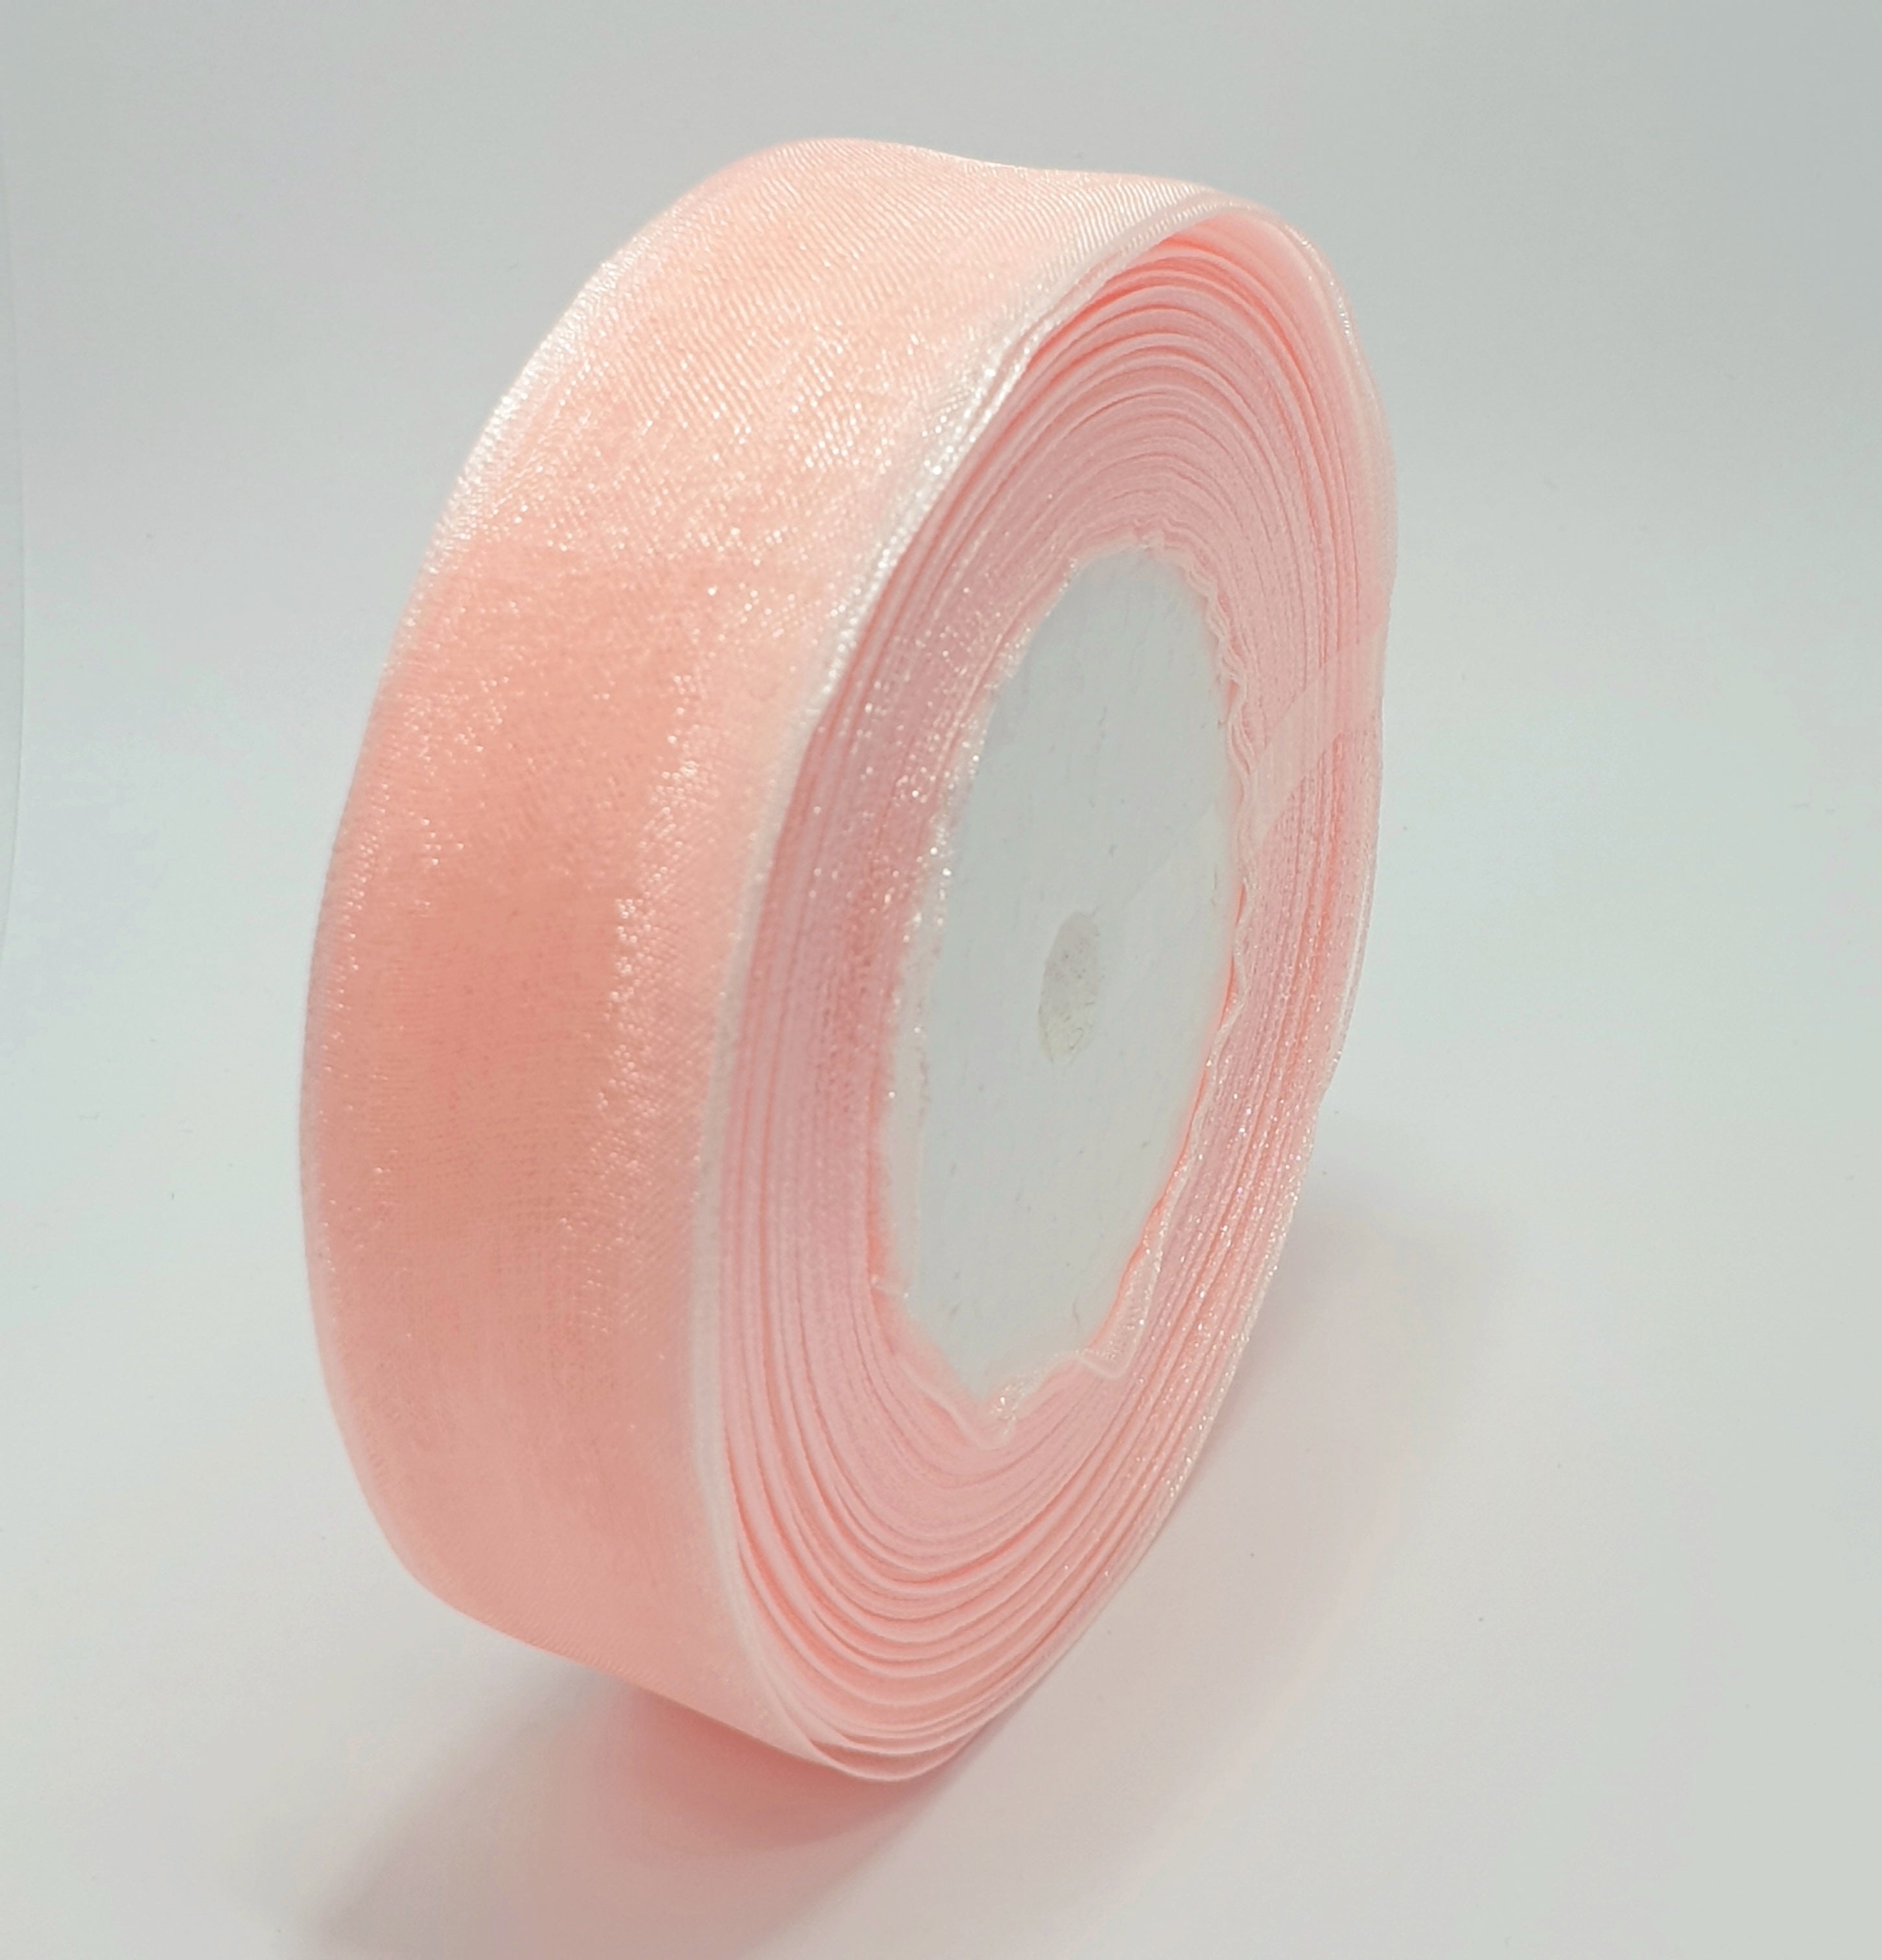 MajorCrafts 25mm 45metres Sheer Organza Fabric Ribbon Roll Pink Shade R1007